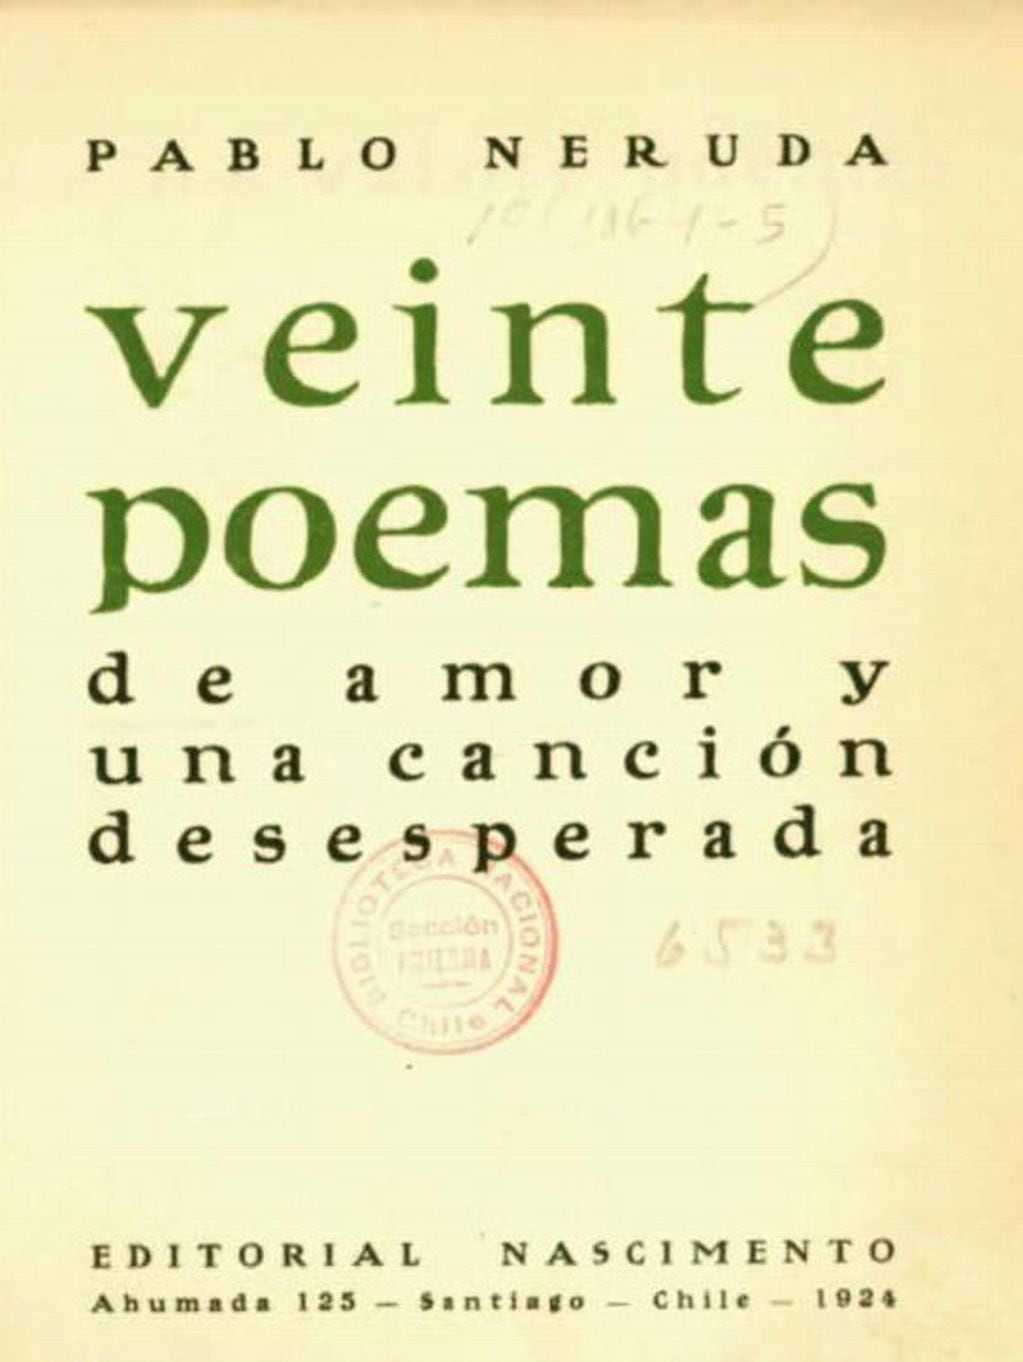 Portada de la primera edición de "Veinte poemas de amor y una canción desesperada", de Pablo Neruda, publicada en 1924 en Santiago de Chile.